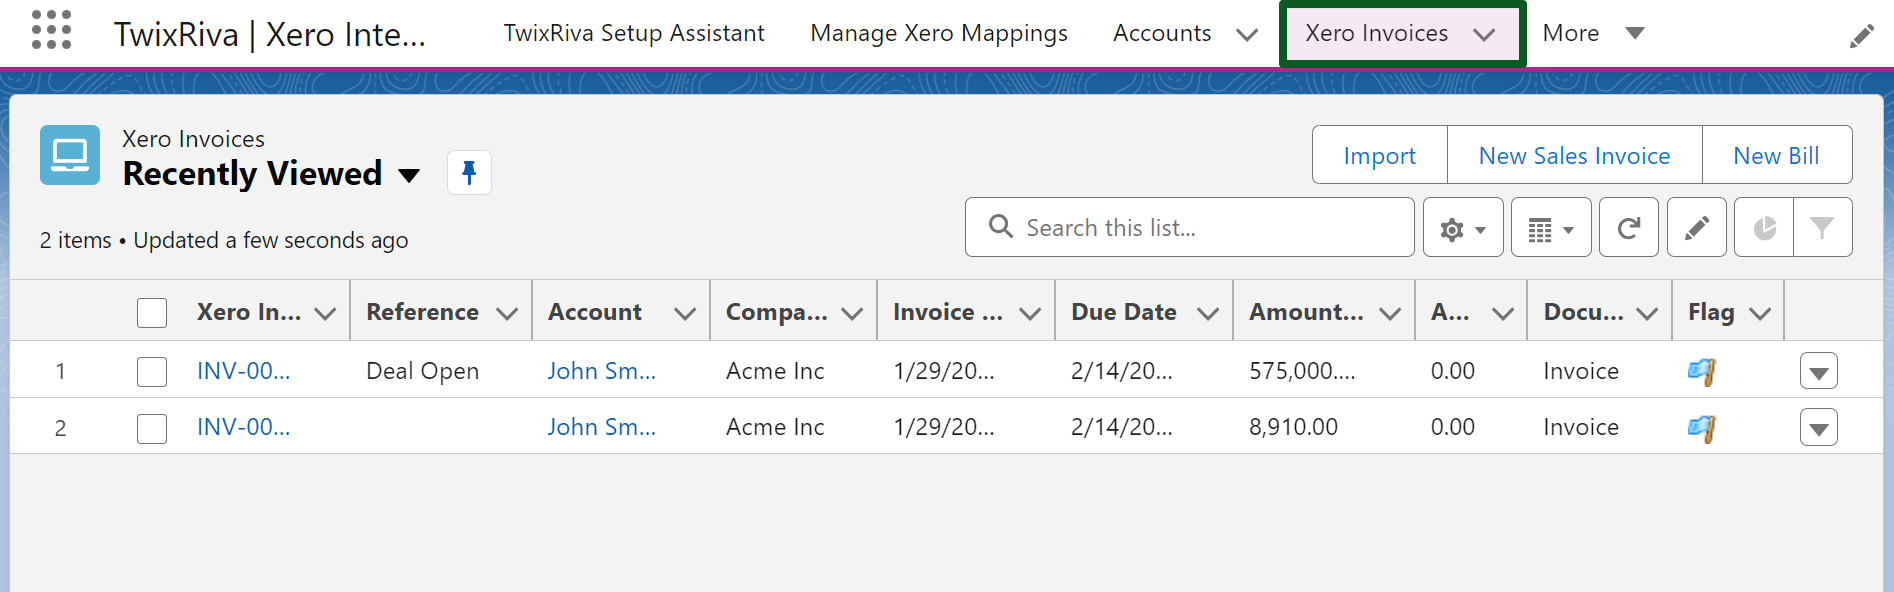 Xero Invoices Tab